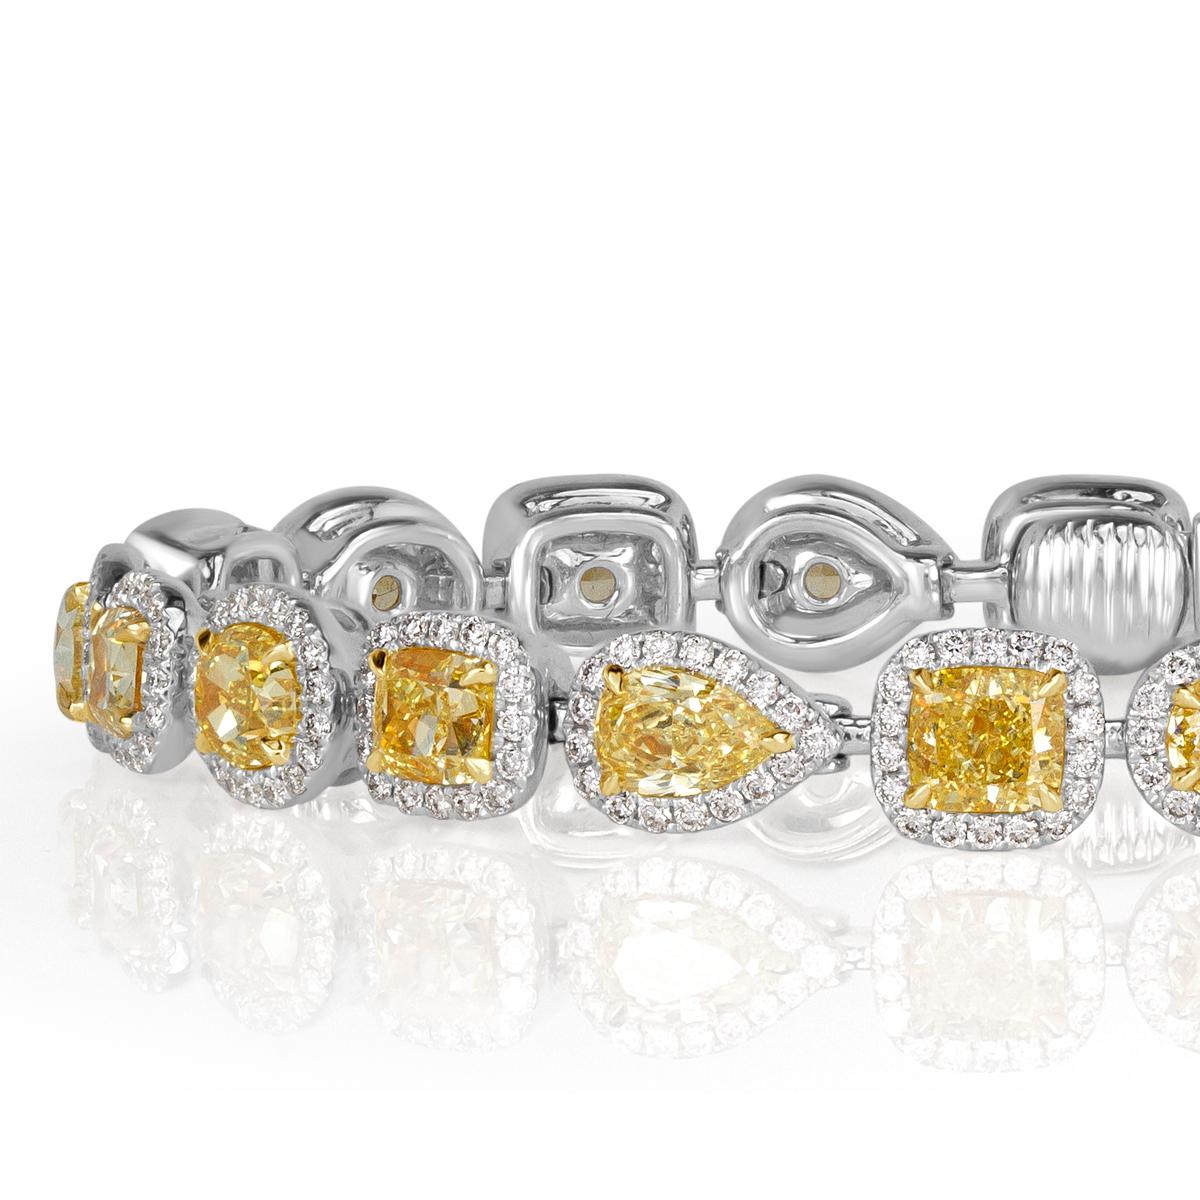 Dieses atemberaubende Diamantarmband ist aus jedem Blickwinkel wunderschön. Es besteht aus größeren gelben Fancy-Diamanten in verschiedenen Formen, darunter runde, kissenförmige, ovale und birnenförmige Diamanten. Sie werden jeweils von einem Halo